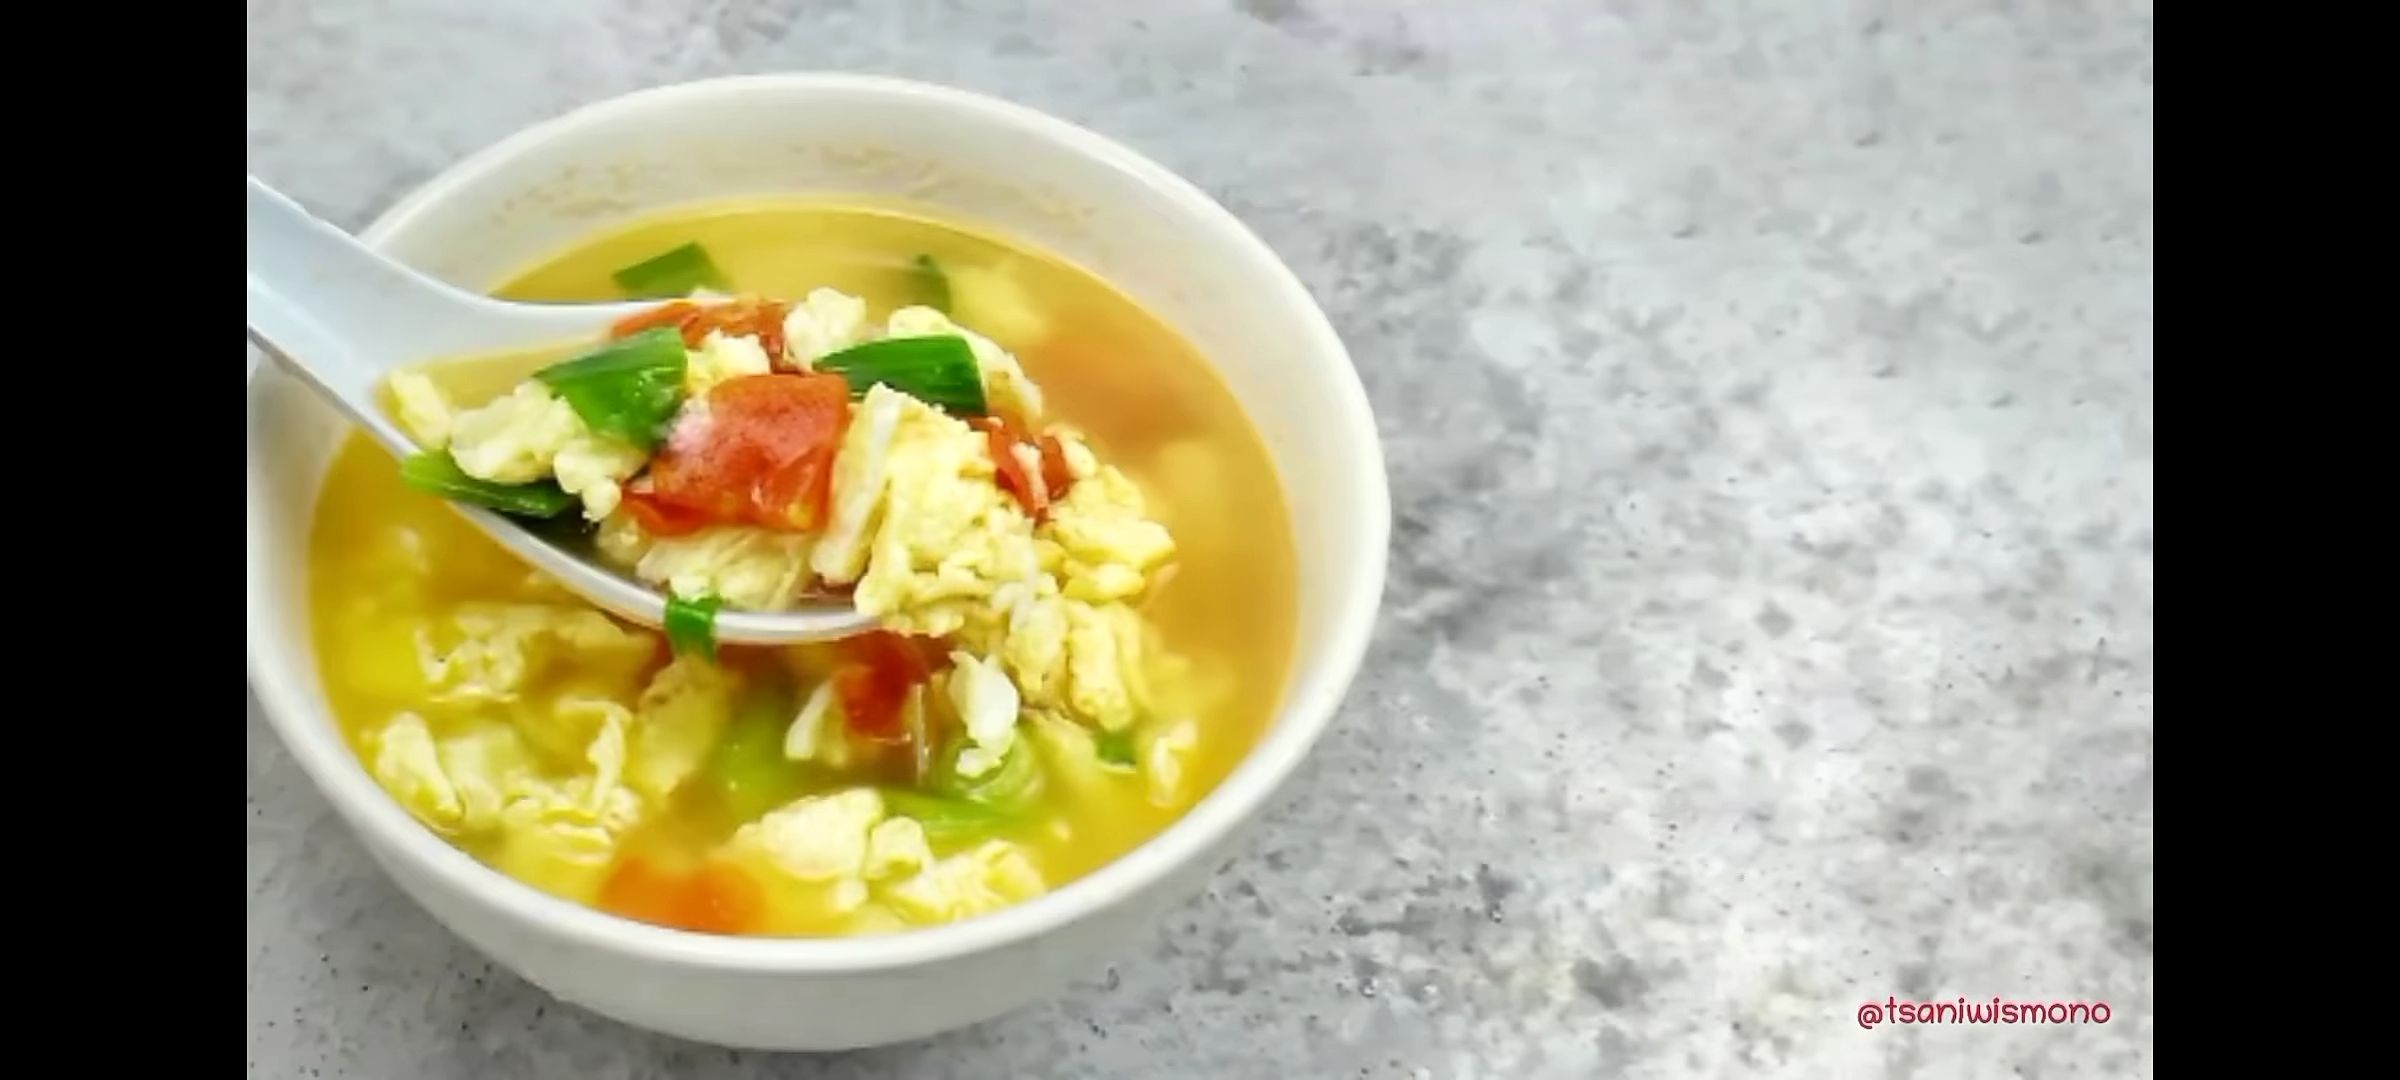 Simak resep dalam membuat sup telur yang cocok dan praktis untuk dijadikan santapan sahur pada Ramadhan 2023.